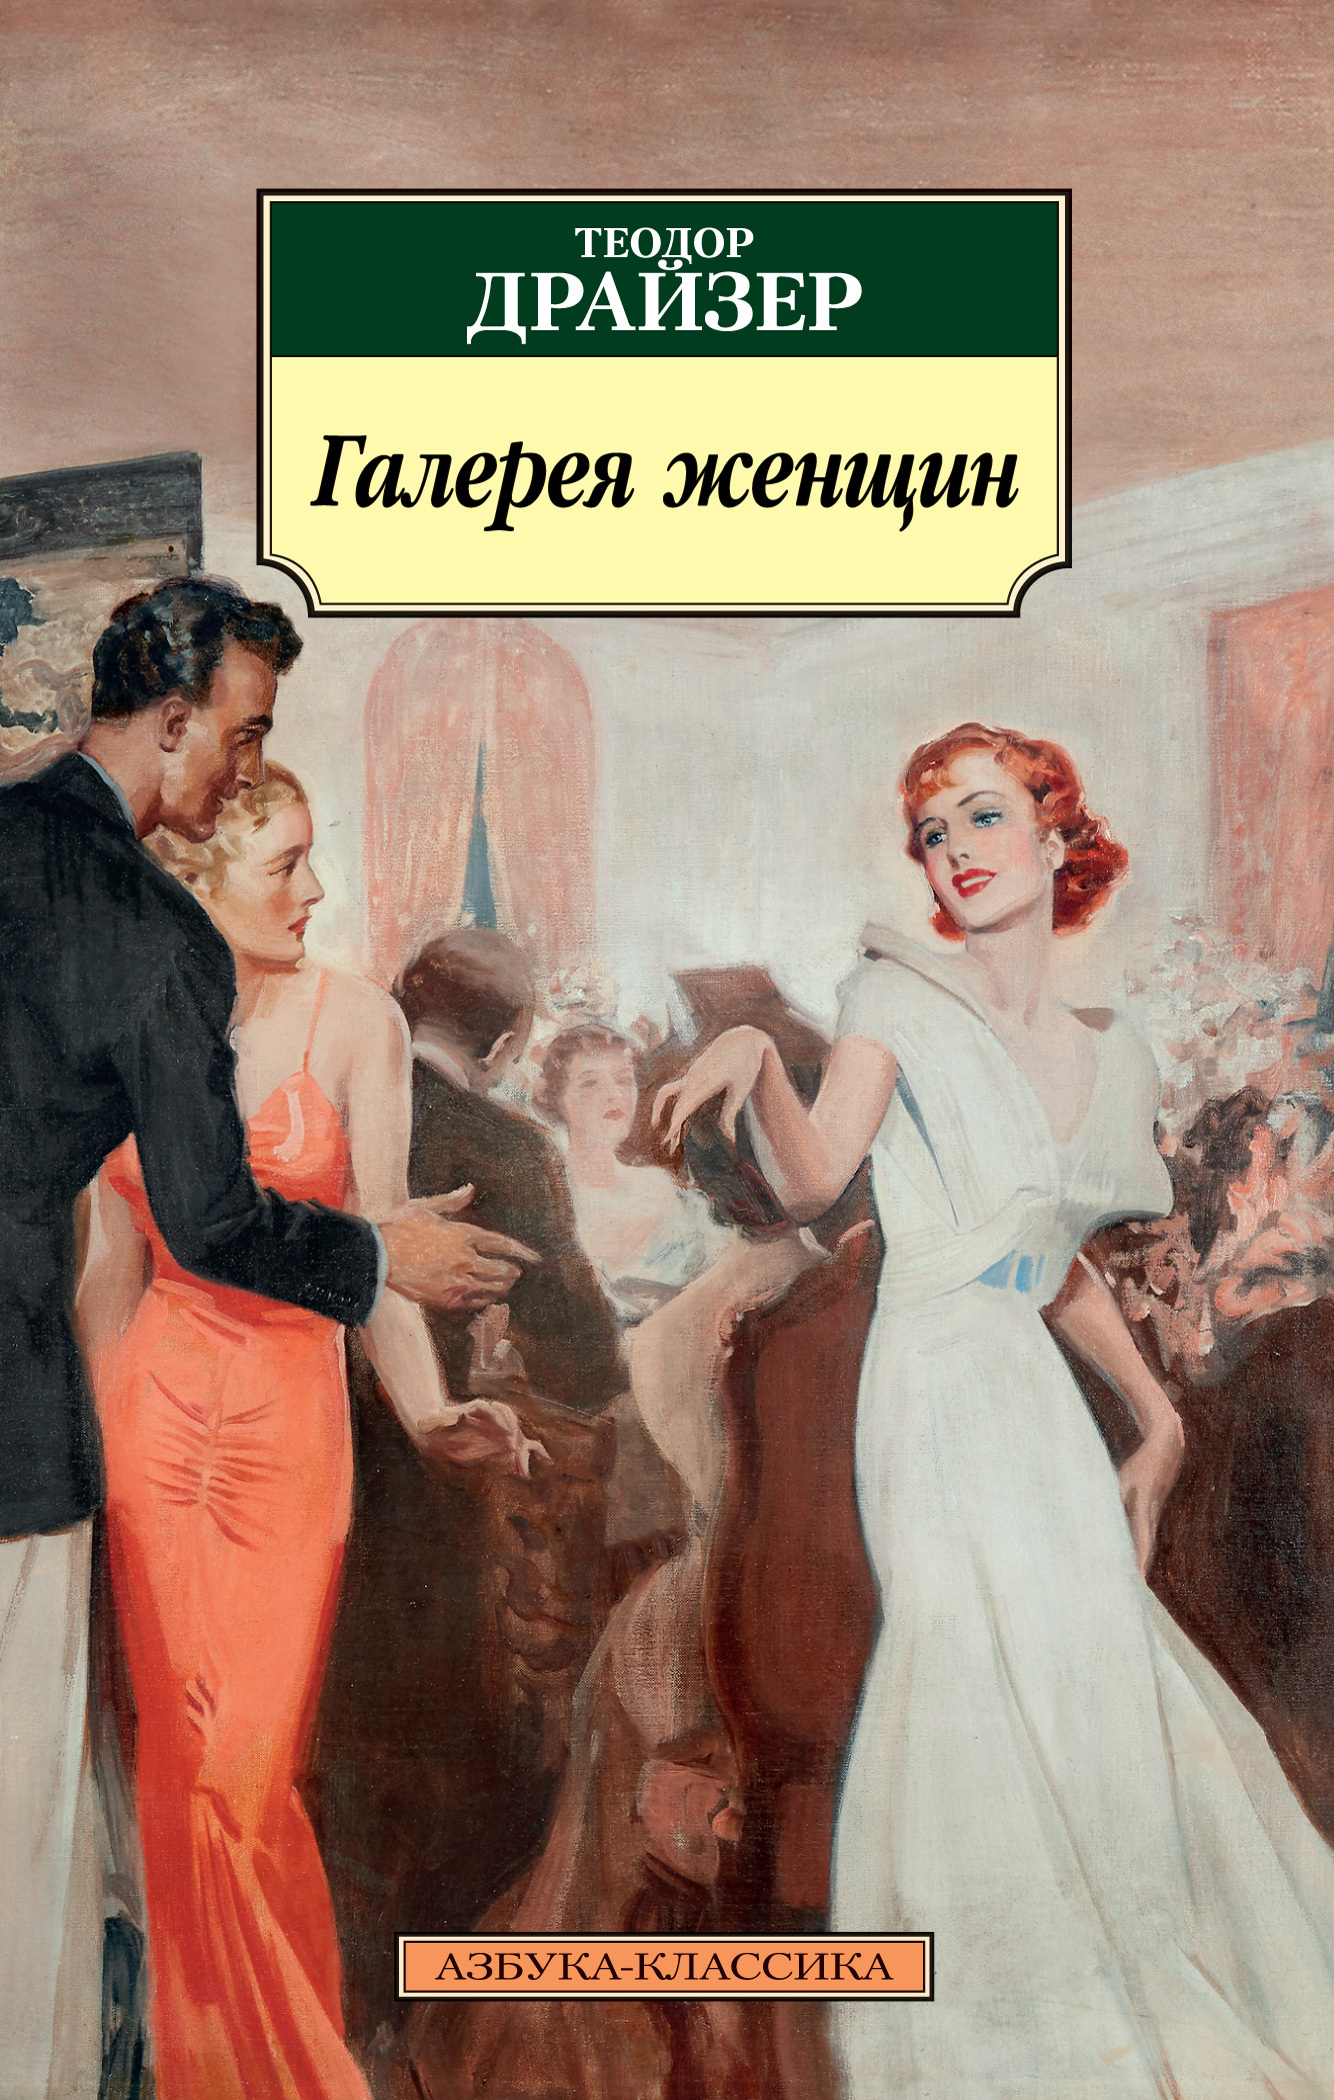 Галерея женщин - Теодор Драйзер